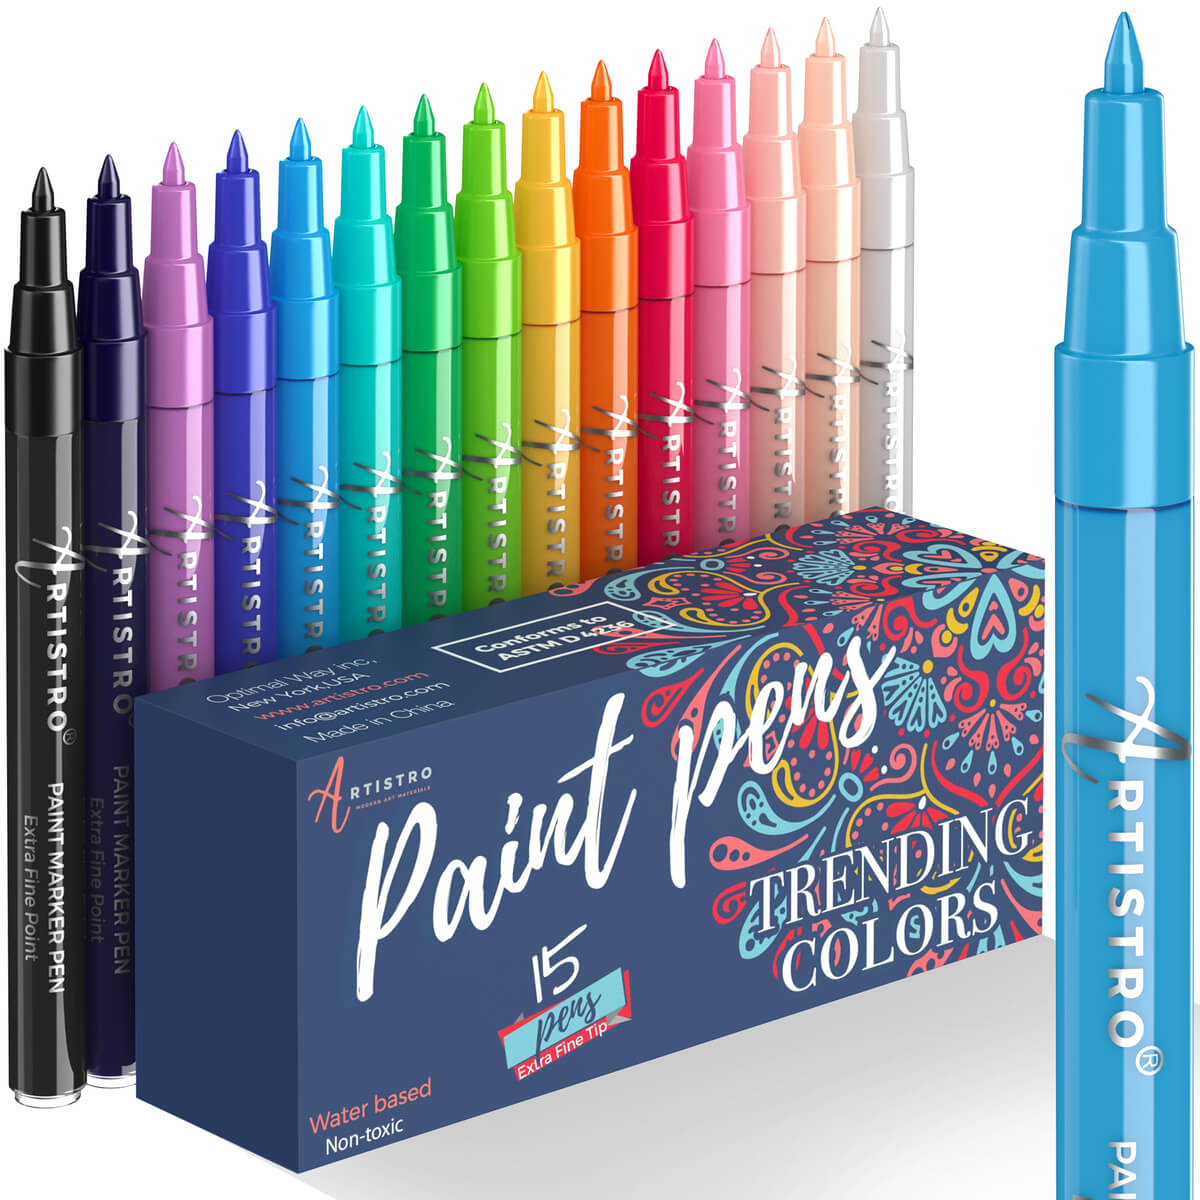 KINGART® PRO Acrylic Paint Pens, 2mm Medium Tip Size, Set of 12 Unique  Colors in 2023